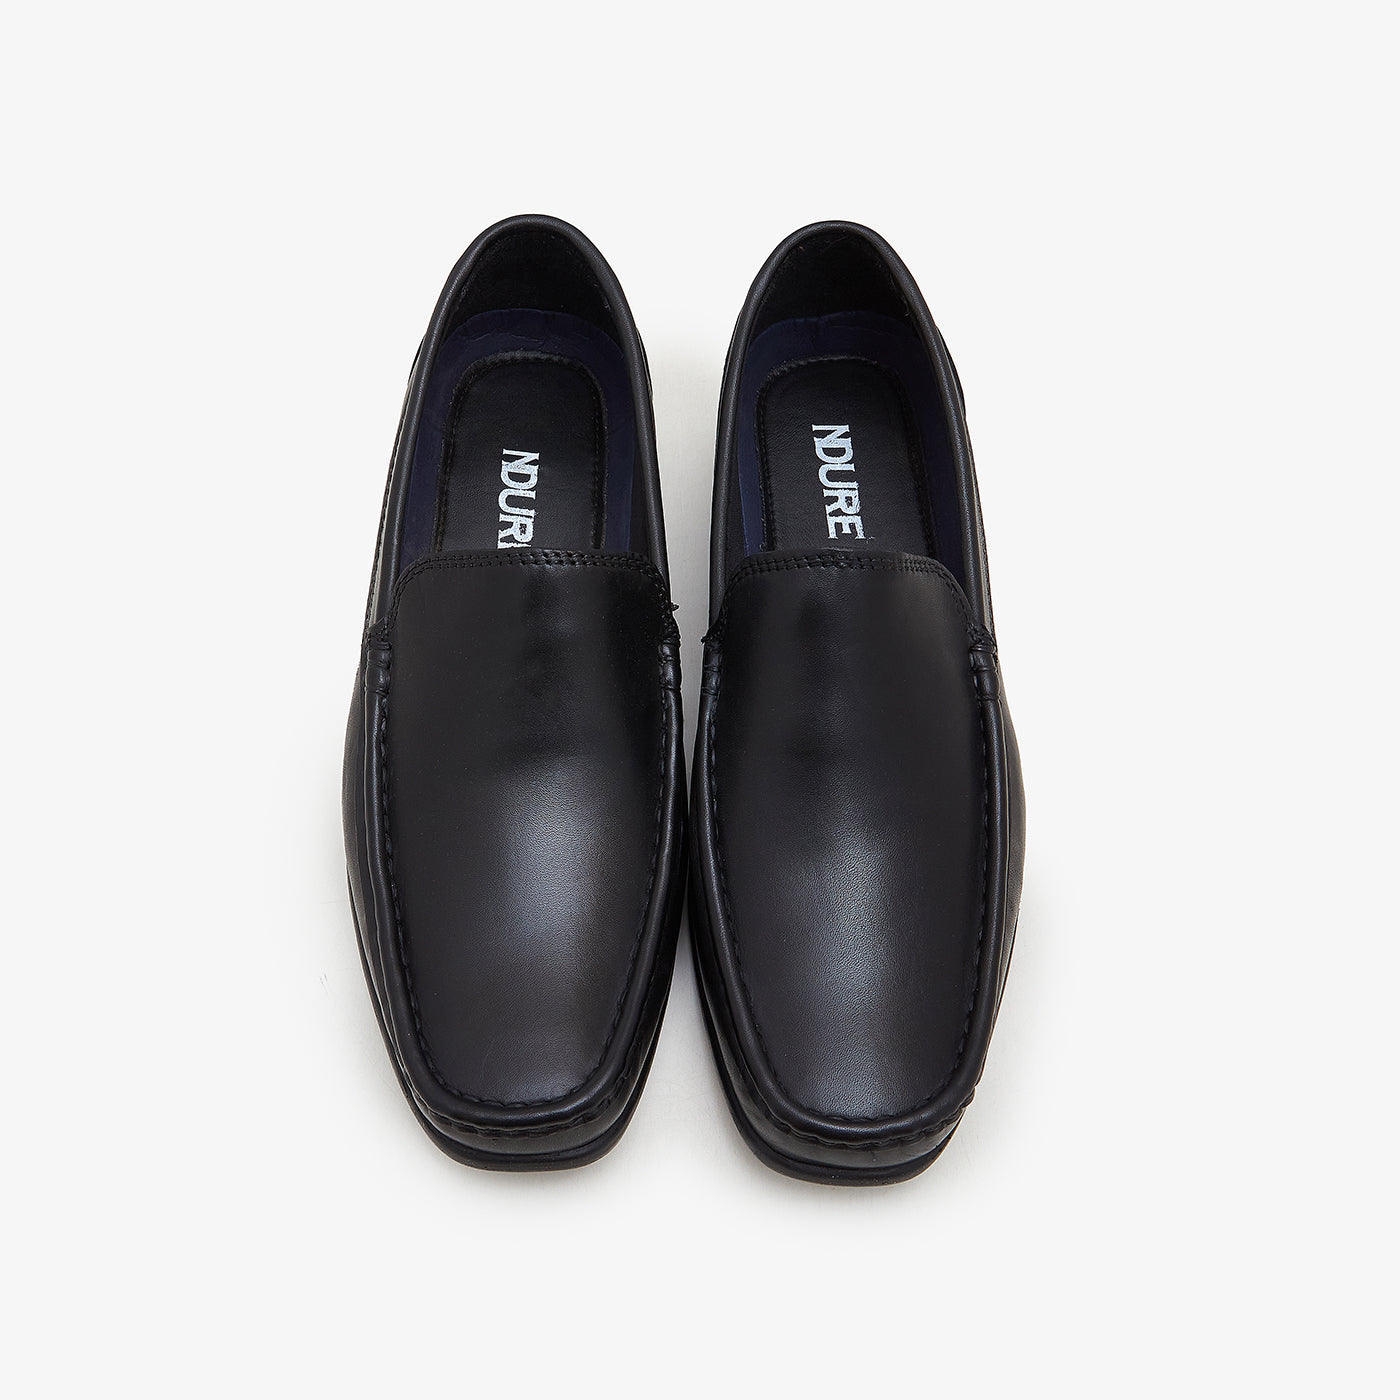 Men's Elegant Leather Loafers